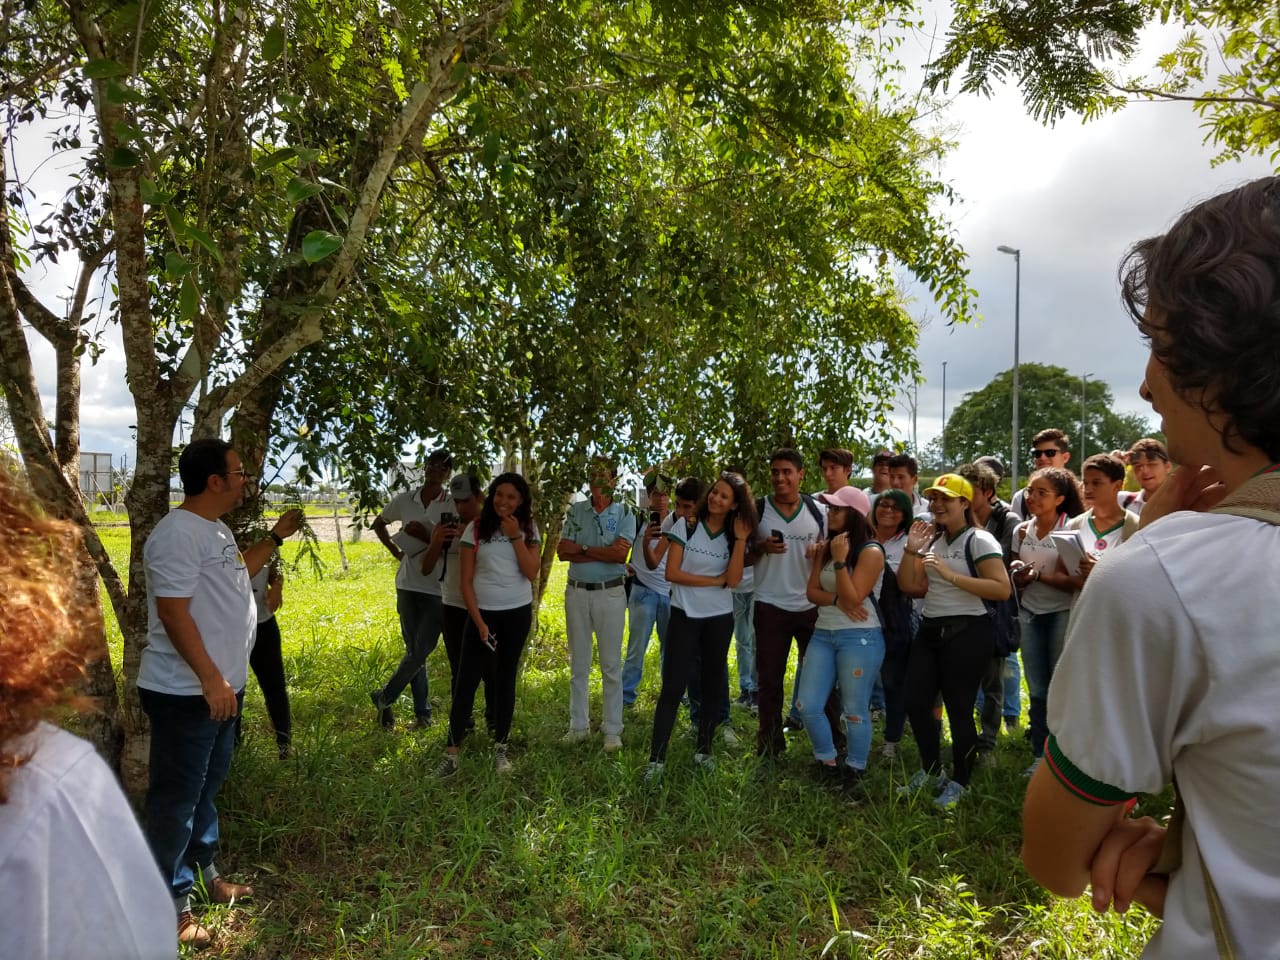 O professor Jorge Costa e a equipe do Jardim Botânico FLORAS conversando com os estudantes do IFBA na recepção da visita. Foto da profa. Olívia Duarte